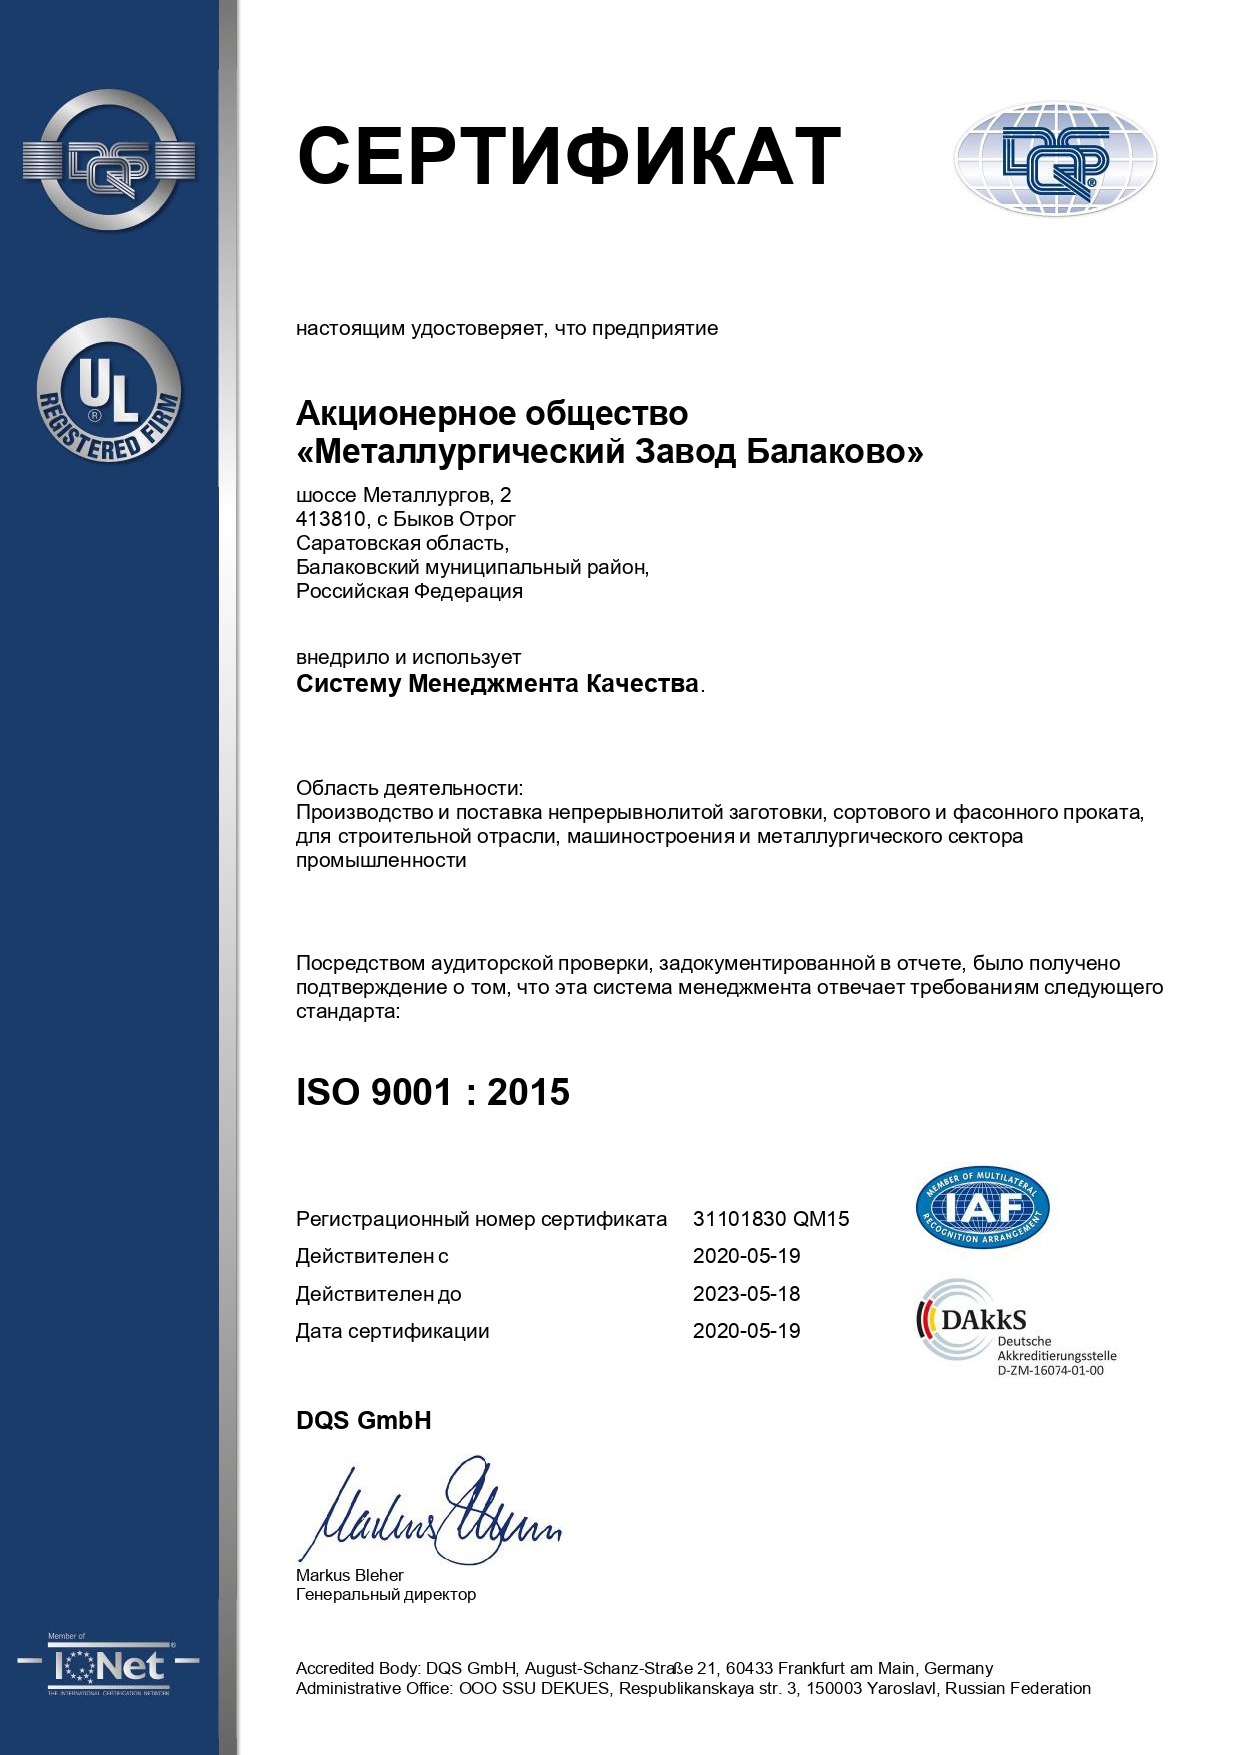 Сертификат, удостоверяющий, что Система Менеджмента Качества АО "МЗ Балаково" соответствует требованиям стандарта ISO 9001:2015